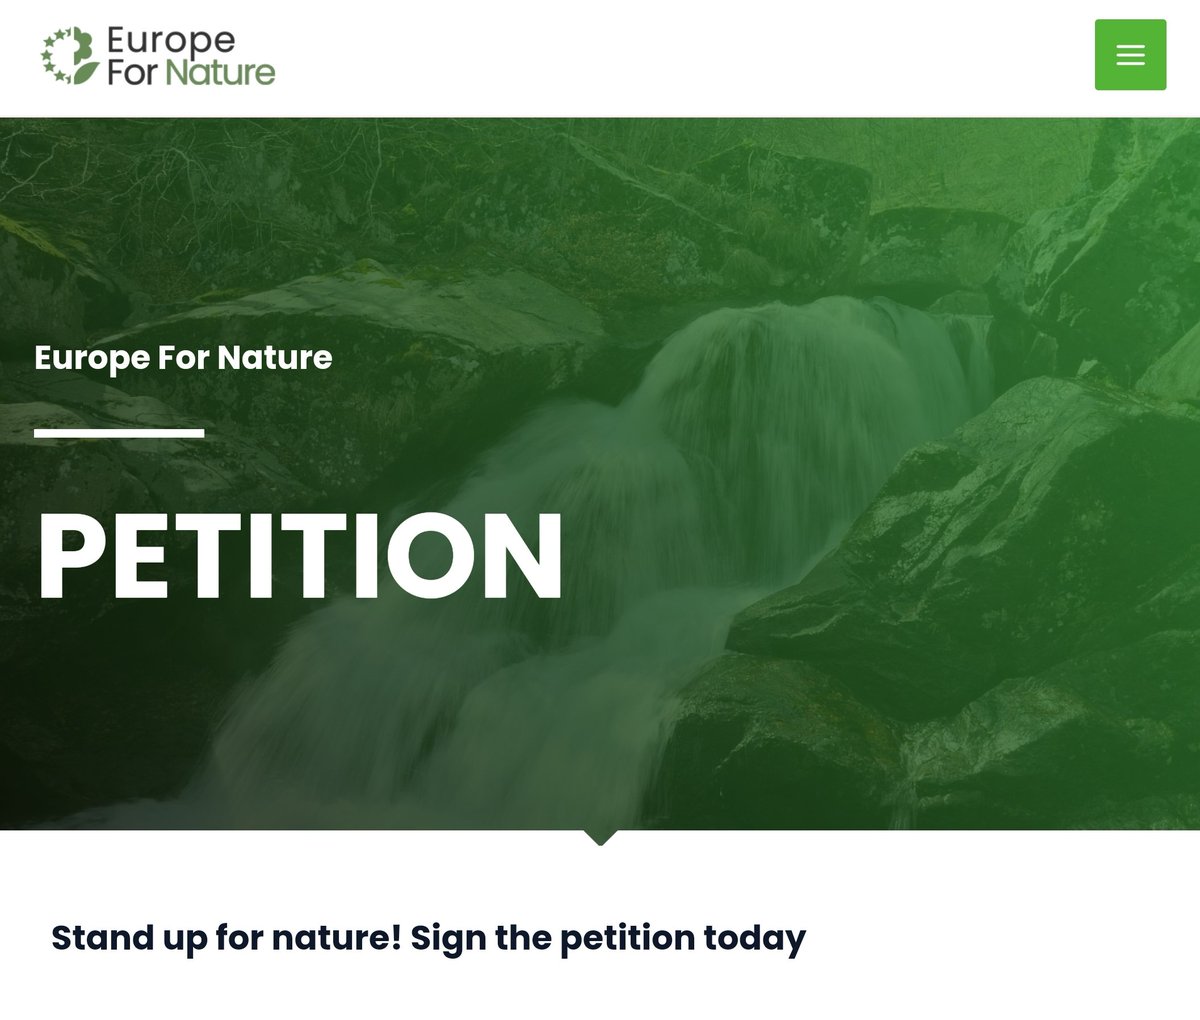 Deze #petitie roept de Europese leiders op prioriteit te geven aan het beschermen en herstellen van #biodiversiteit en klimaat, en zo te zorgen voor een veilige en duurzame toekomst.
Ik heb getekend. europefornature.eu/petition/
#EuropeForNature